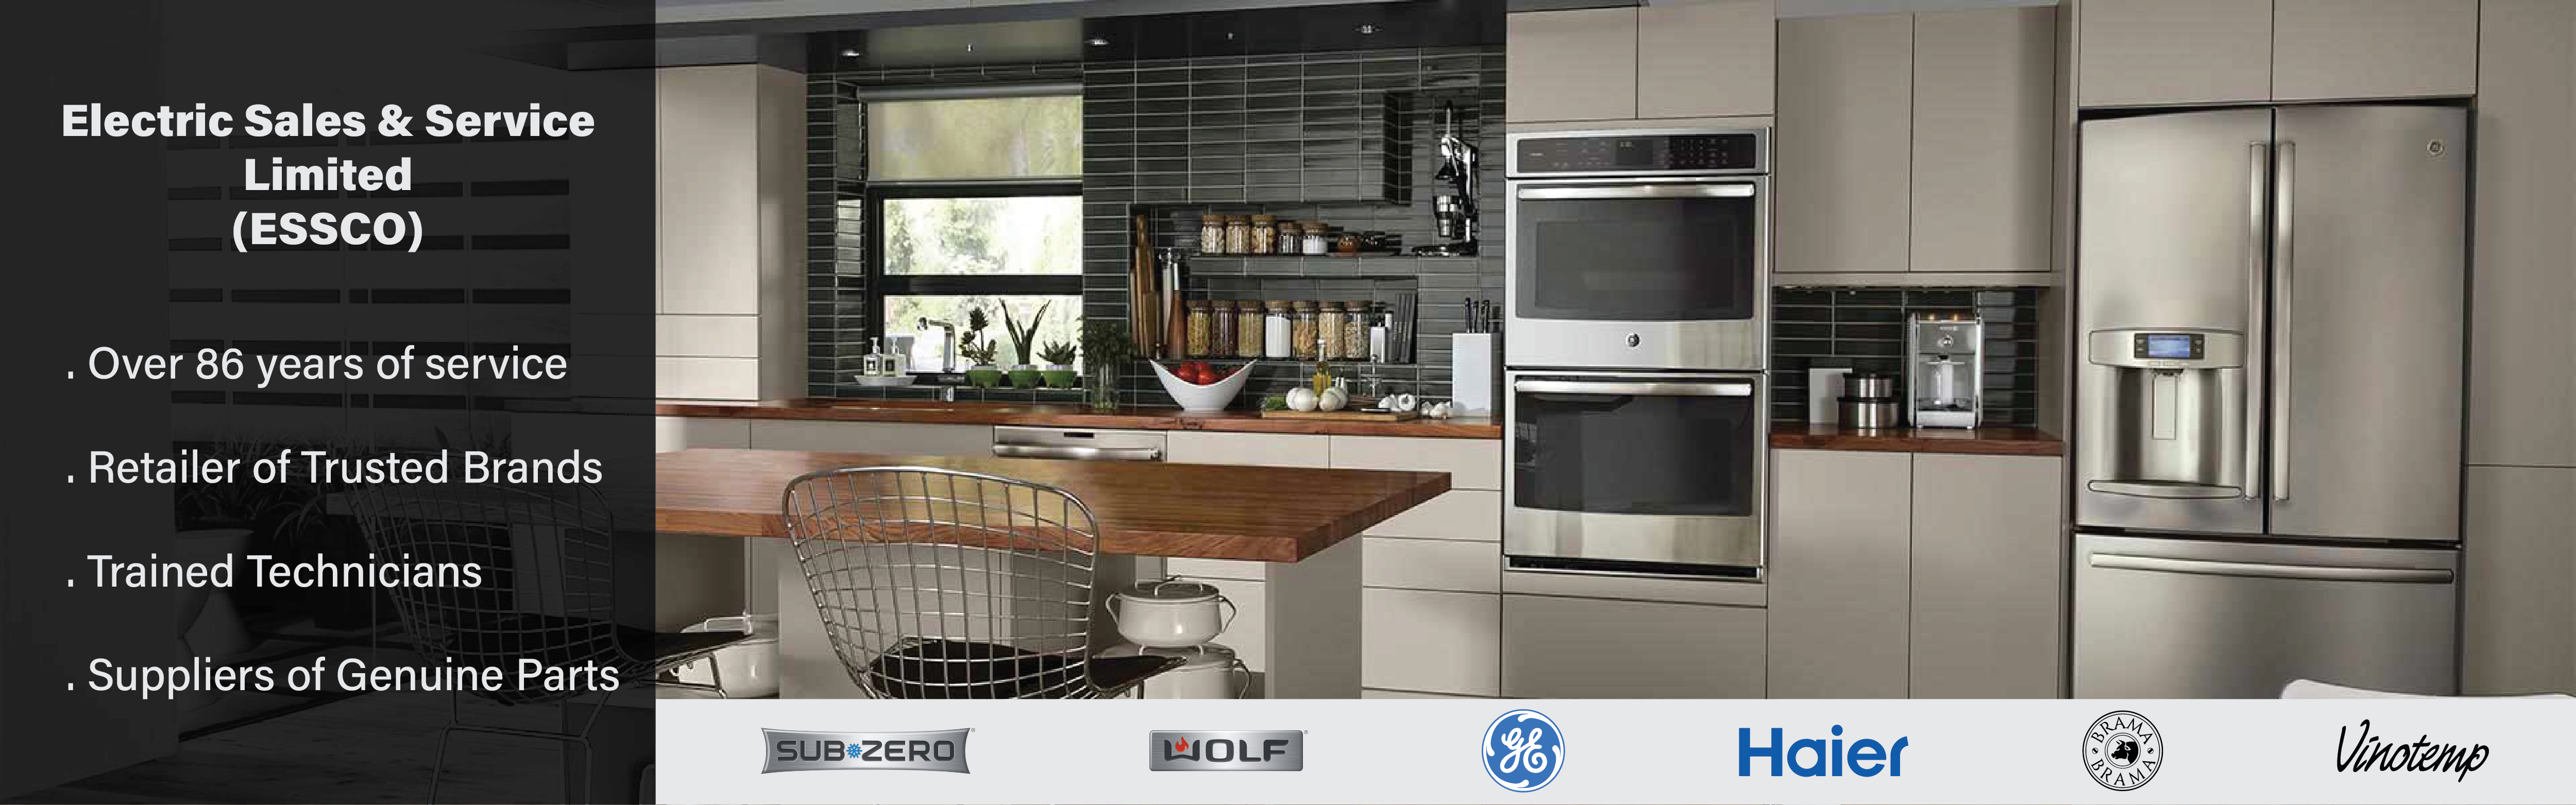 Image slide - Domestic Appliances